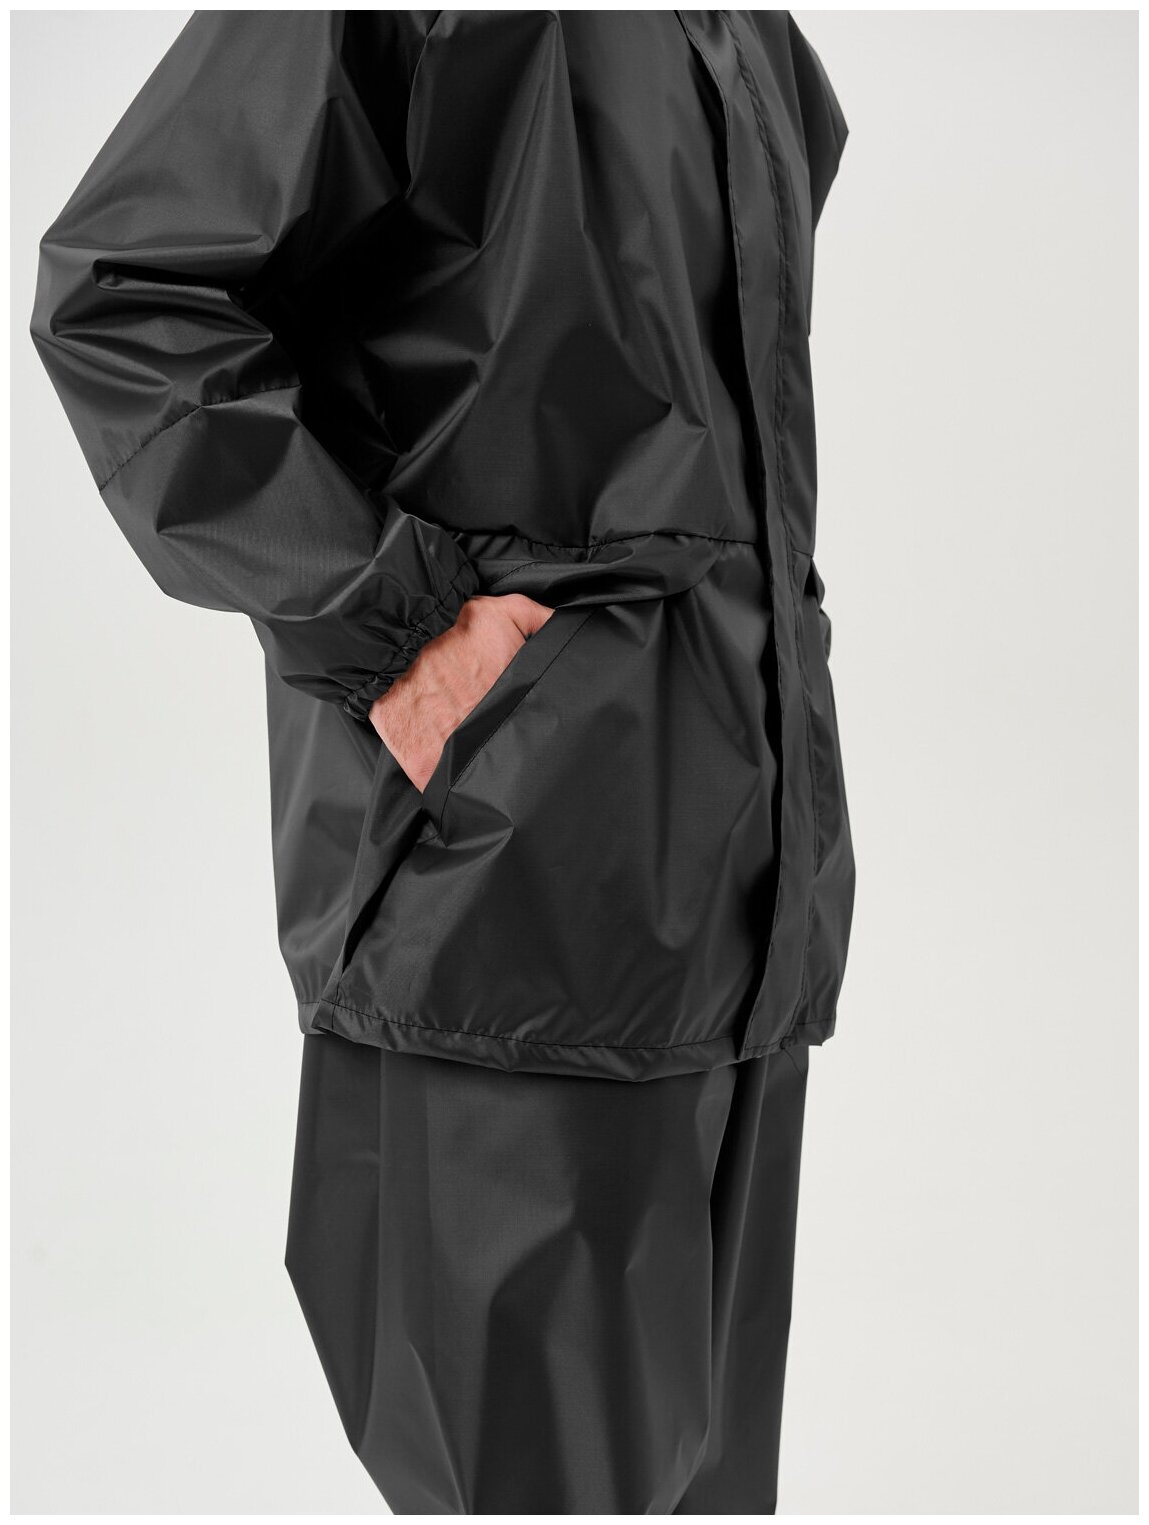 Дождевик мужской пончо накидка непромокаемый костюм KATRAN циклон (Оксфорд, темно-серый), Размер: 48-50